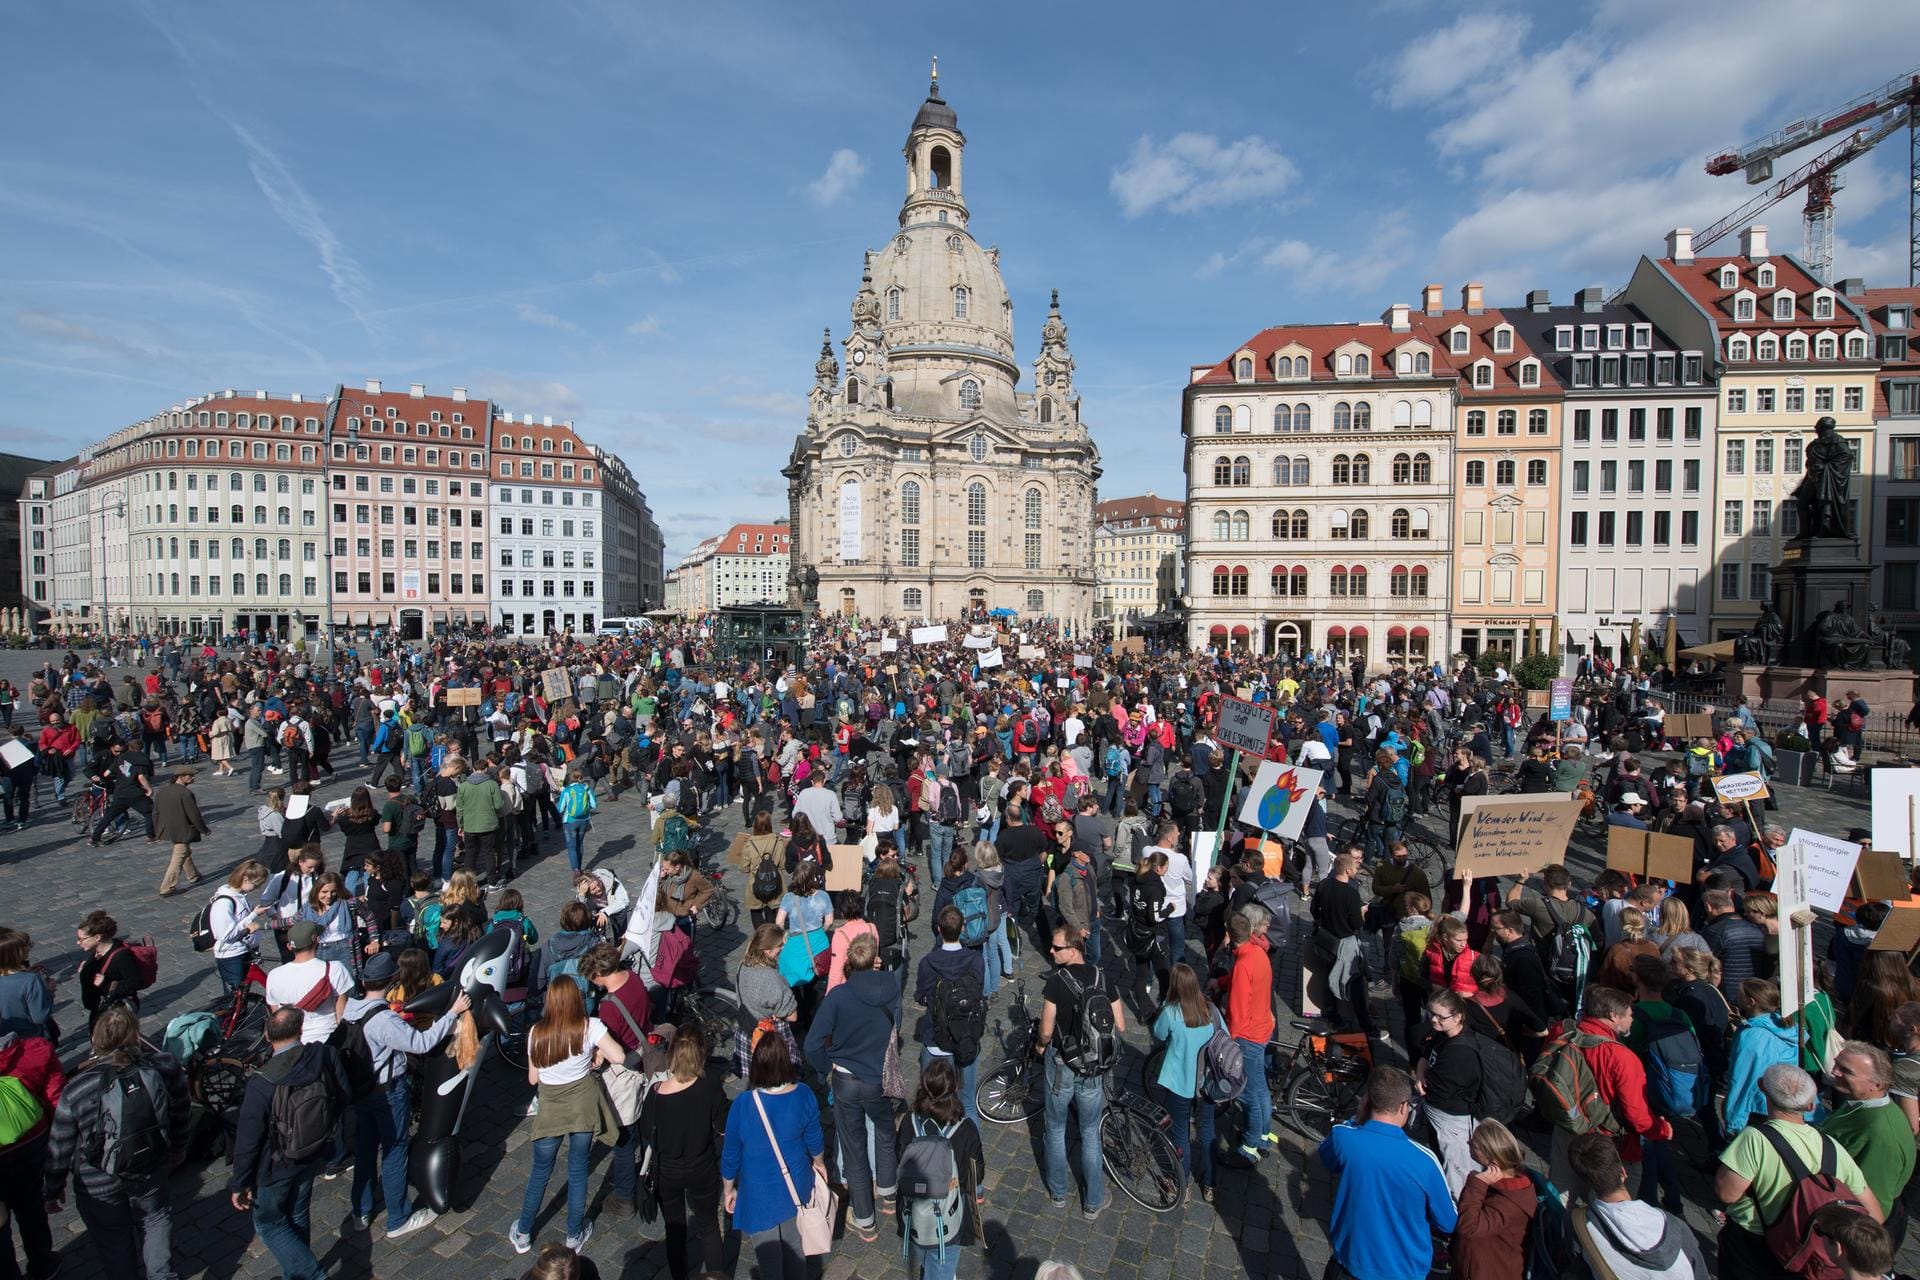 Teilnehmer einer Demonstration stehen mit Schildern und Transparenten auf dem Neumarkt vor der Frauenkirche in Dresden. Laut "Fridays for Future" sind explizit nicht nur Schüler, sondern alle Generationen zum Streik aufgerufen.